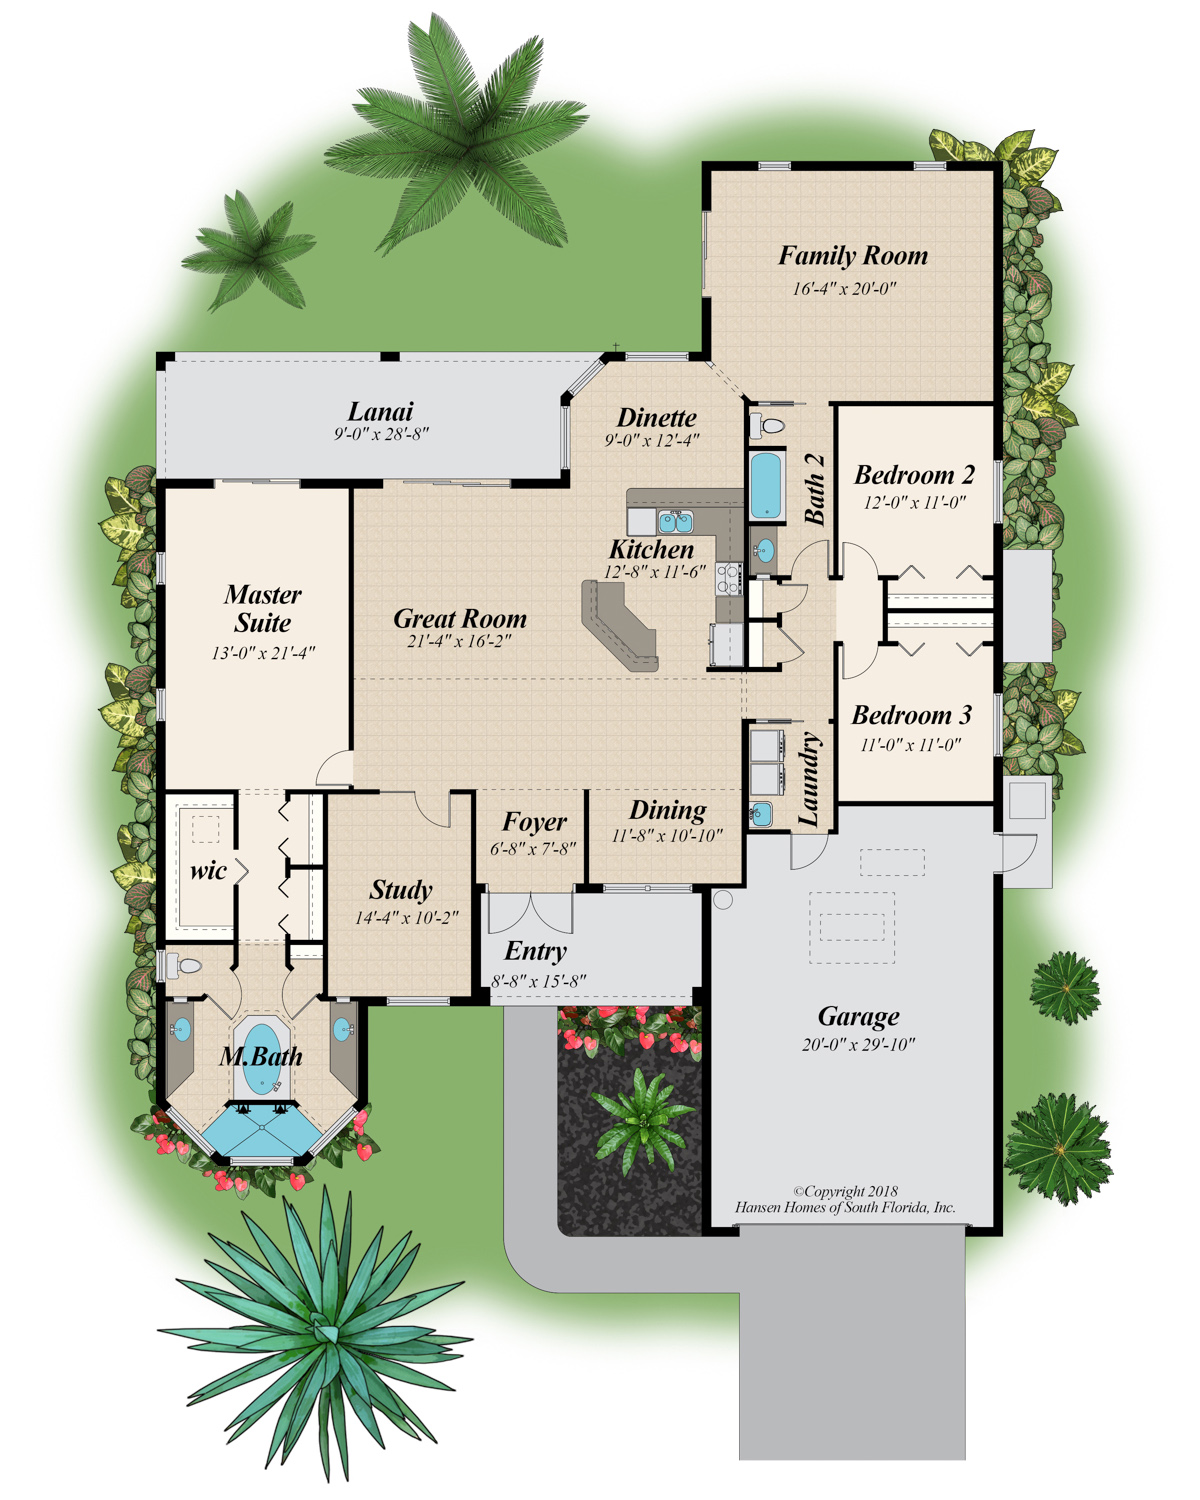 The Slater Grand Bath Family Room Home Plan Floor Plans